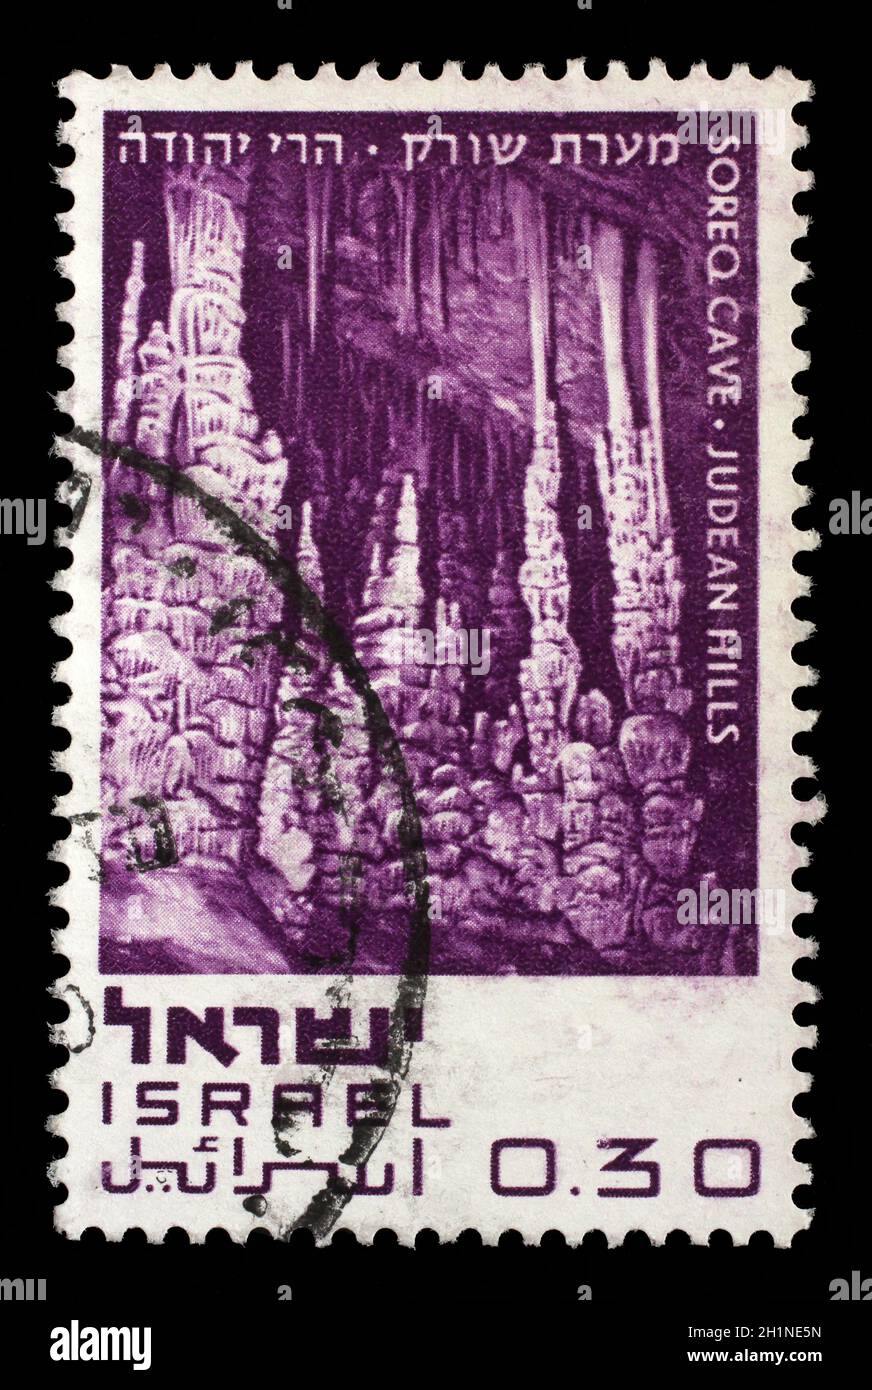 Stempel in der Israel ausgestellten zeigt Soreq Höhle - Judäischen Hügeln, Naturschutzgebiete, circa 1970. Stockfoto